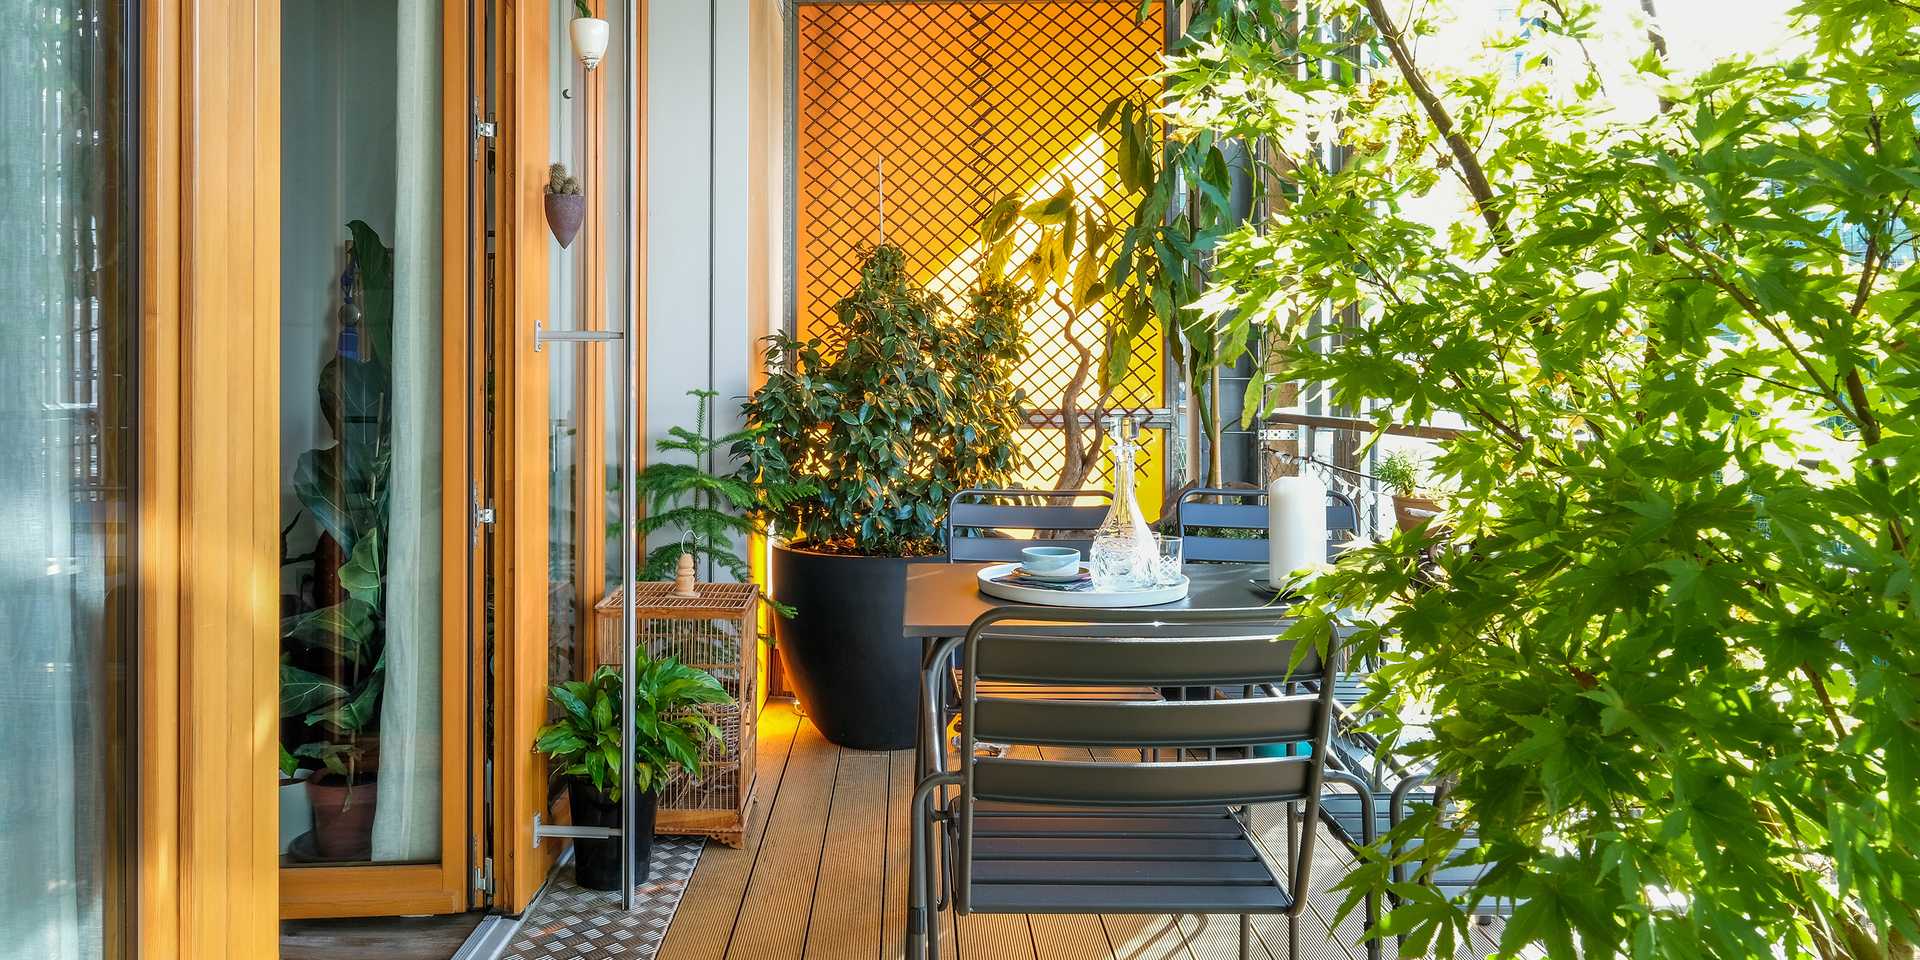 Petite terrasse d'un appartement de la région lilloise aménagée par un paysagiste